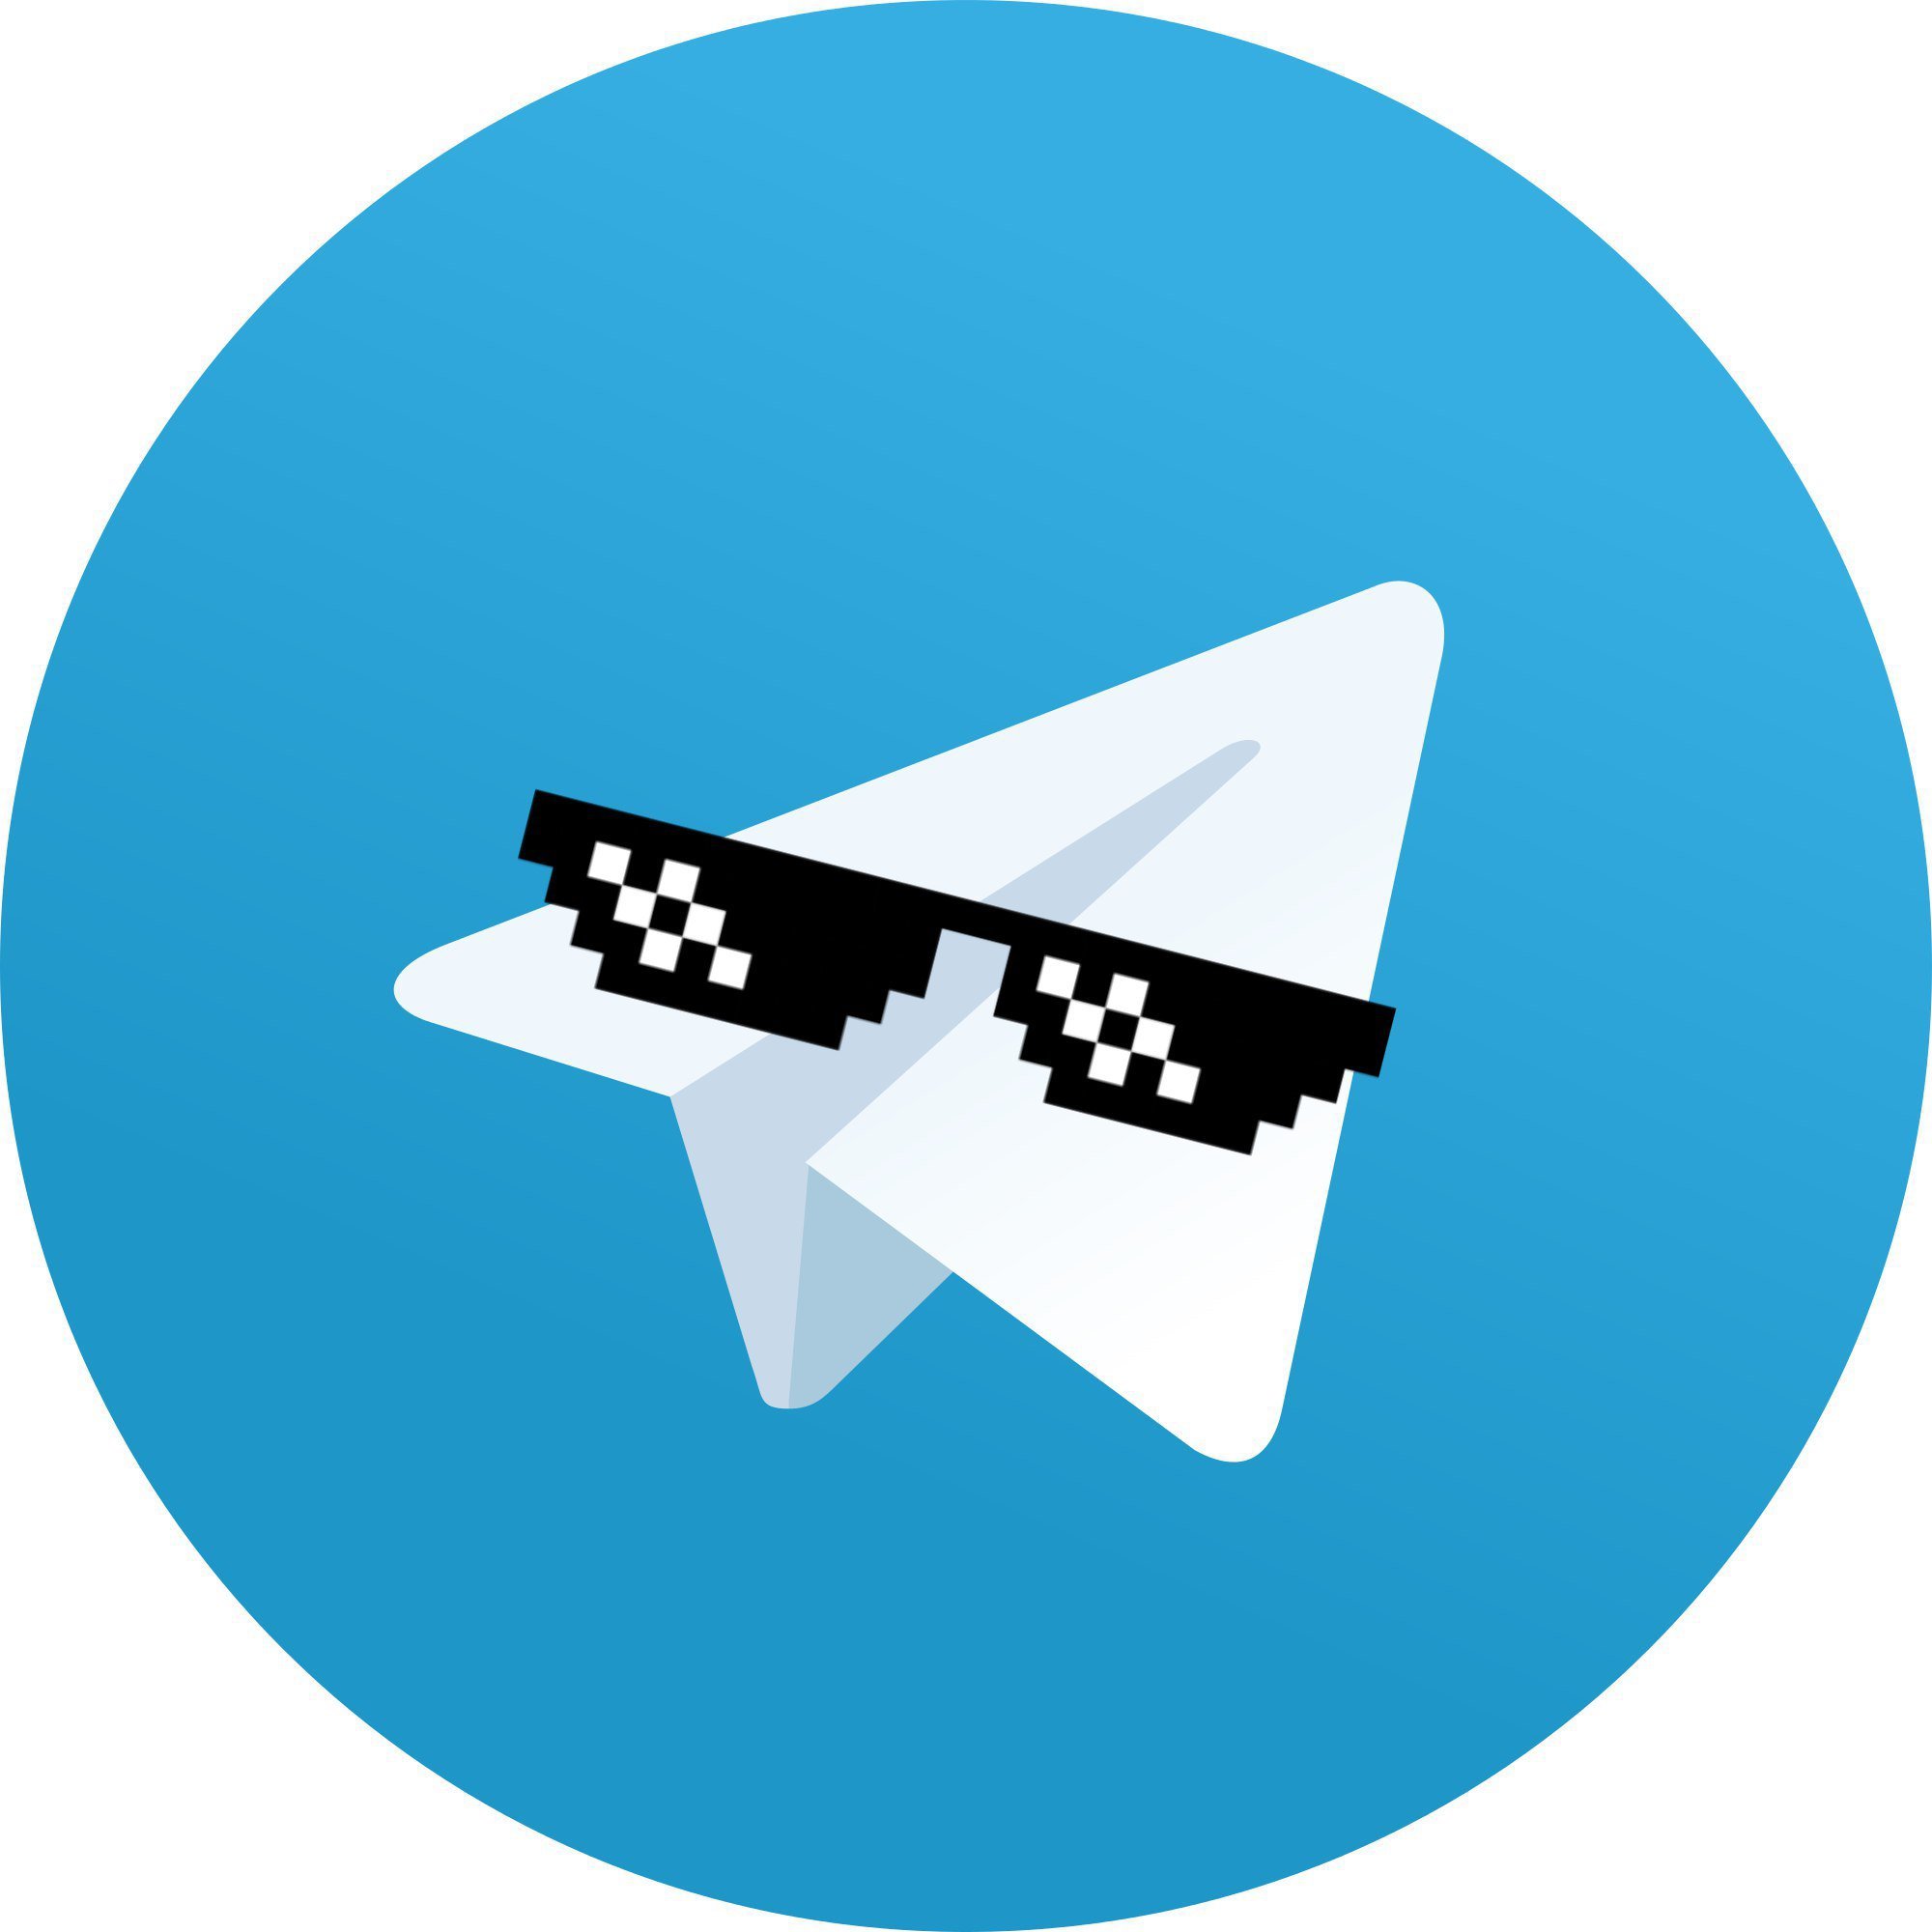 Аватар на телеграмм скачать бесплатно фото 1